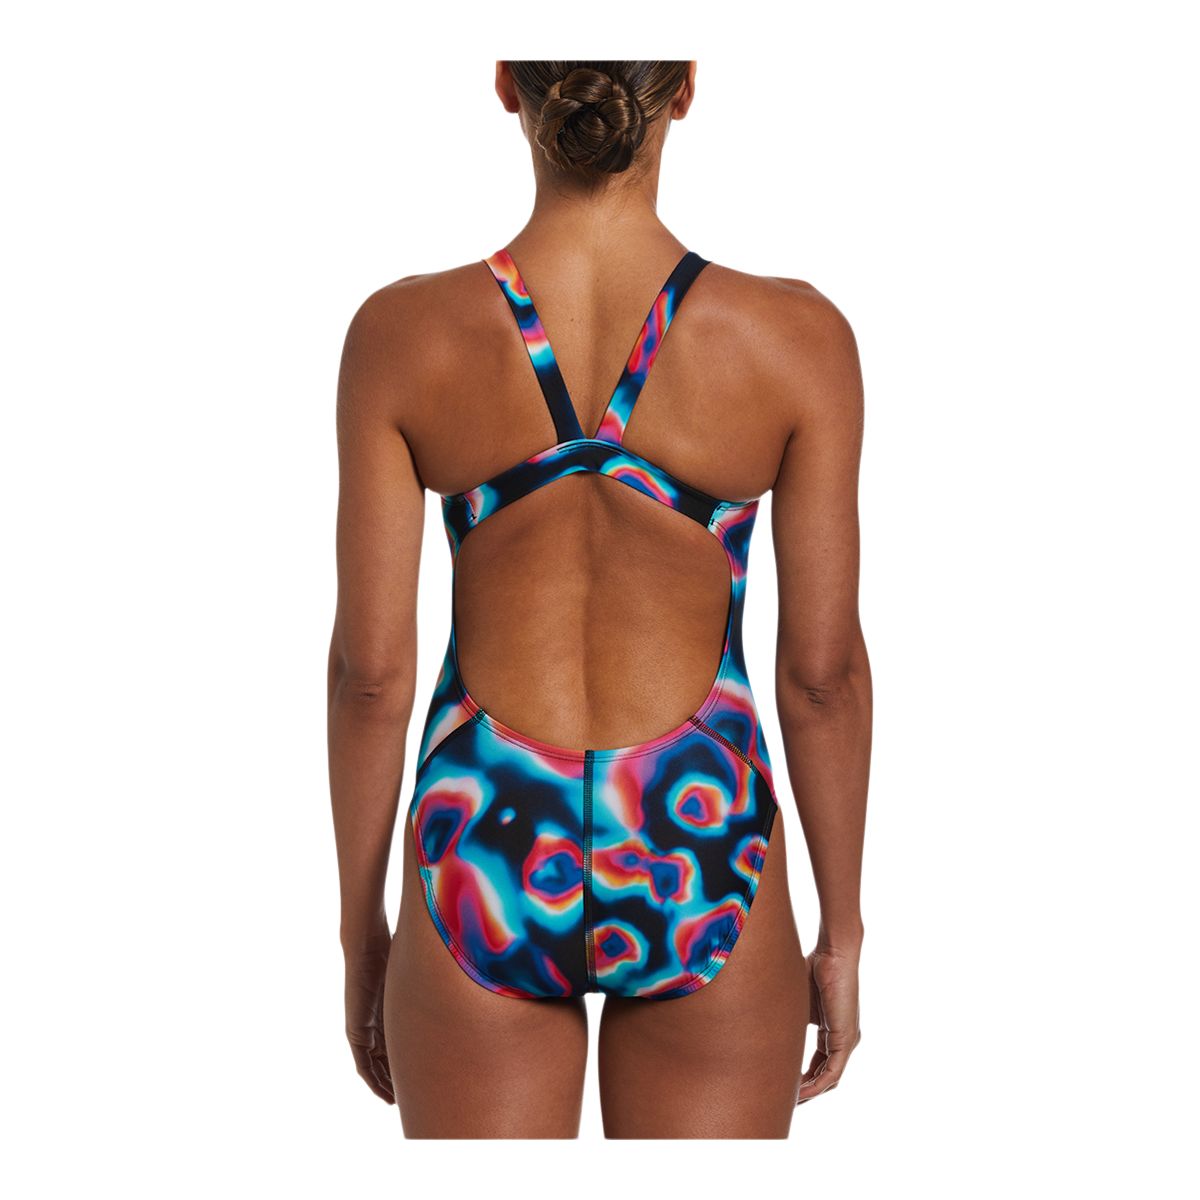 Nike Swim Fastback Women's One-Piece Swimsuit.